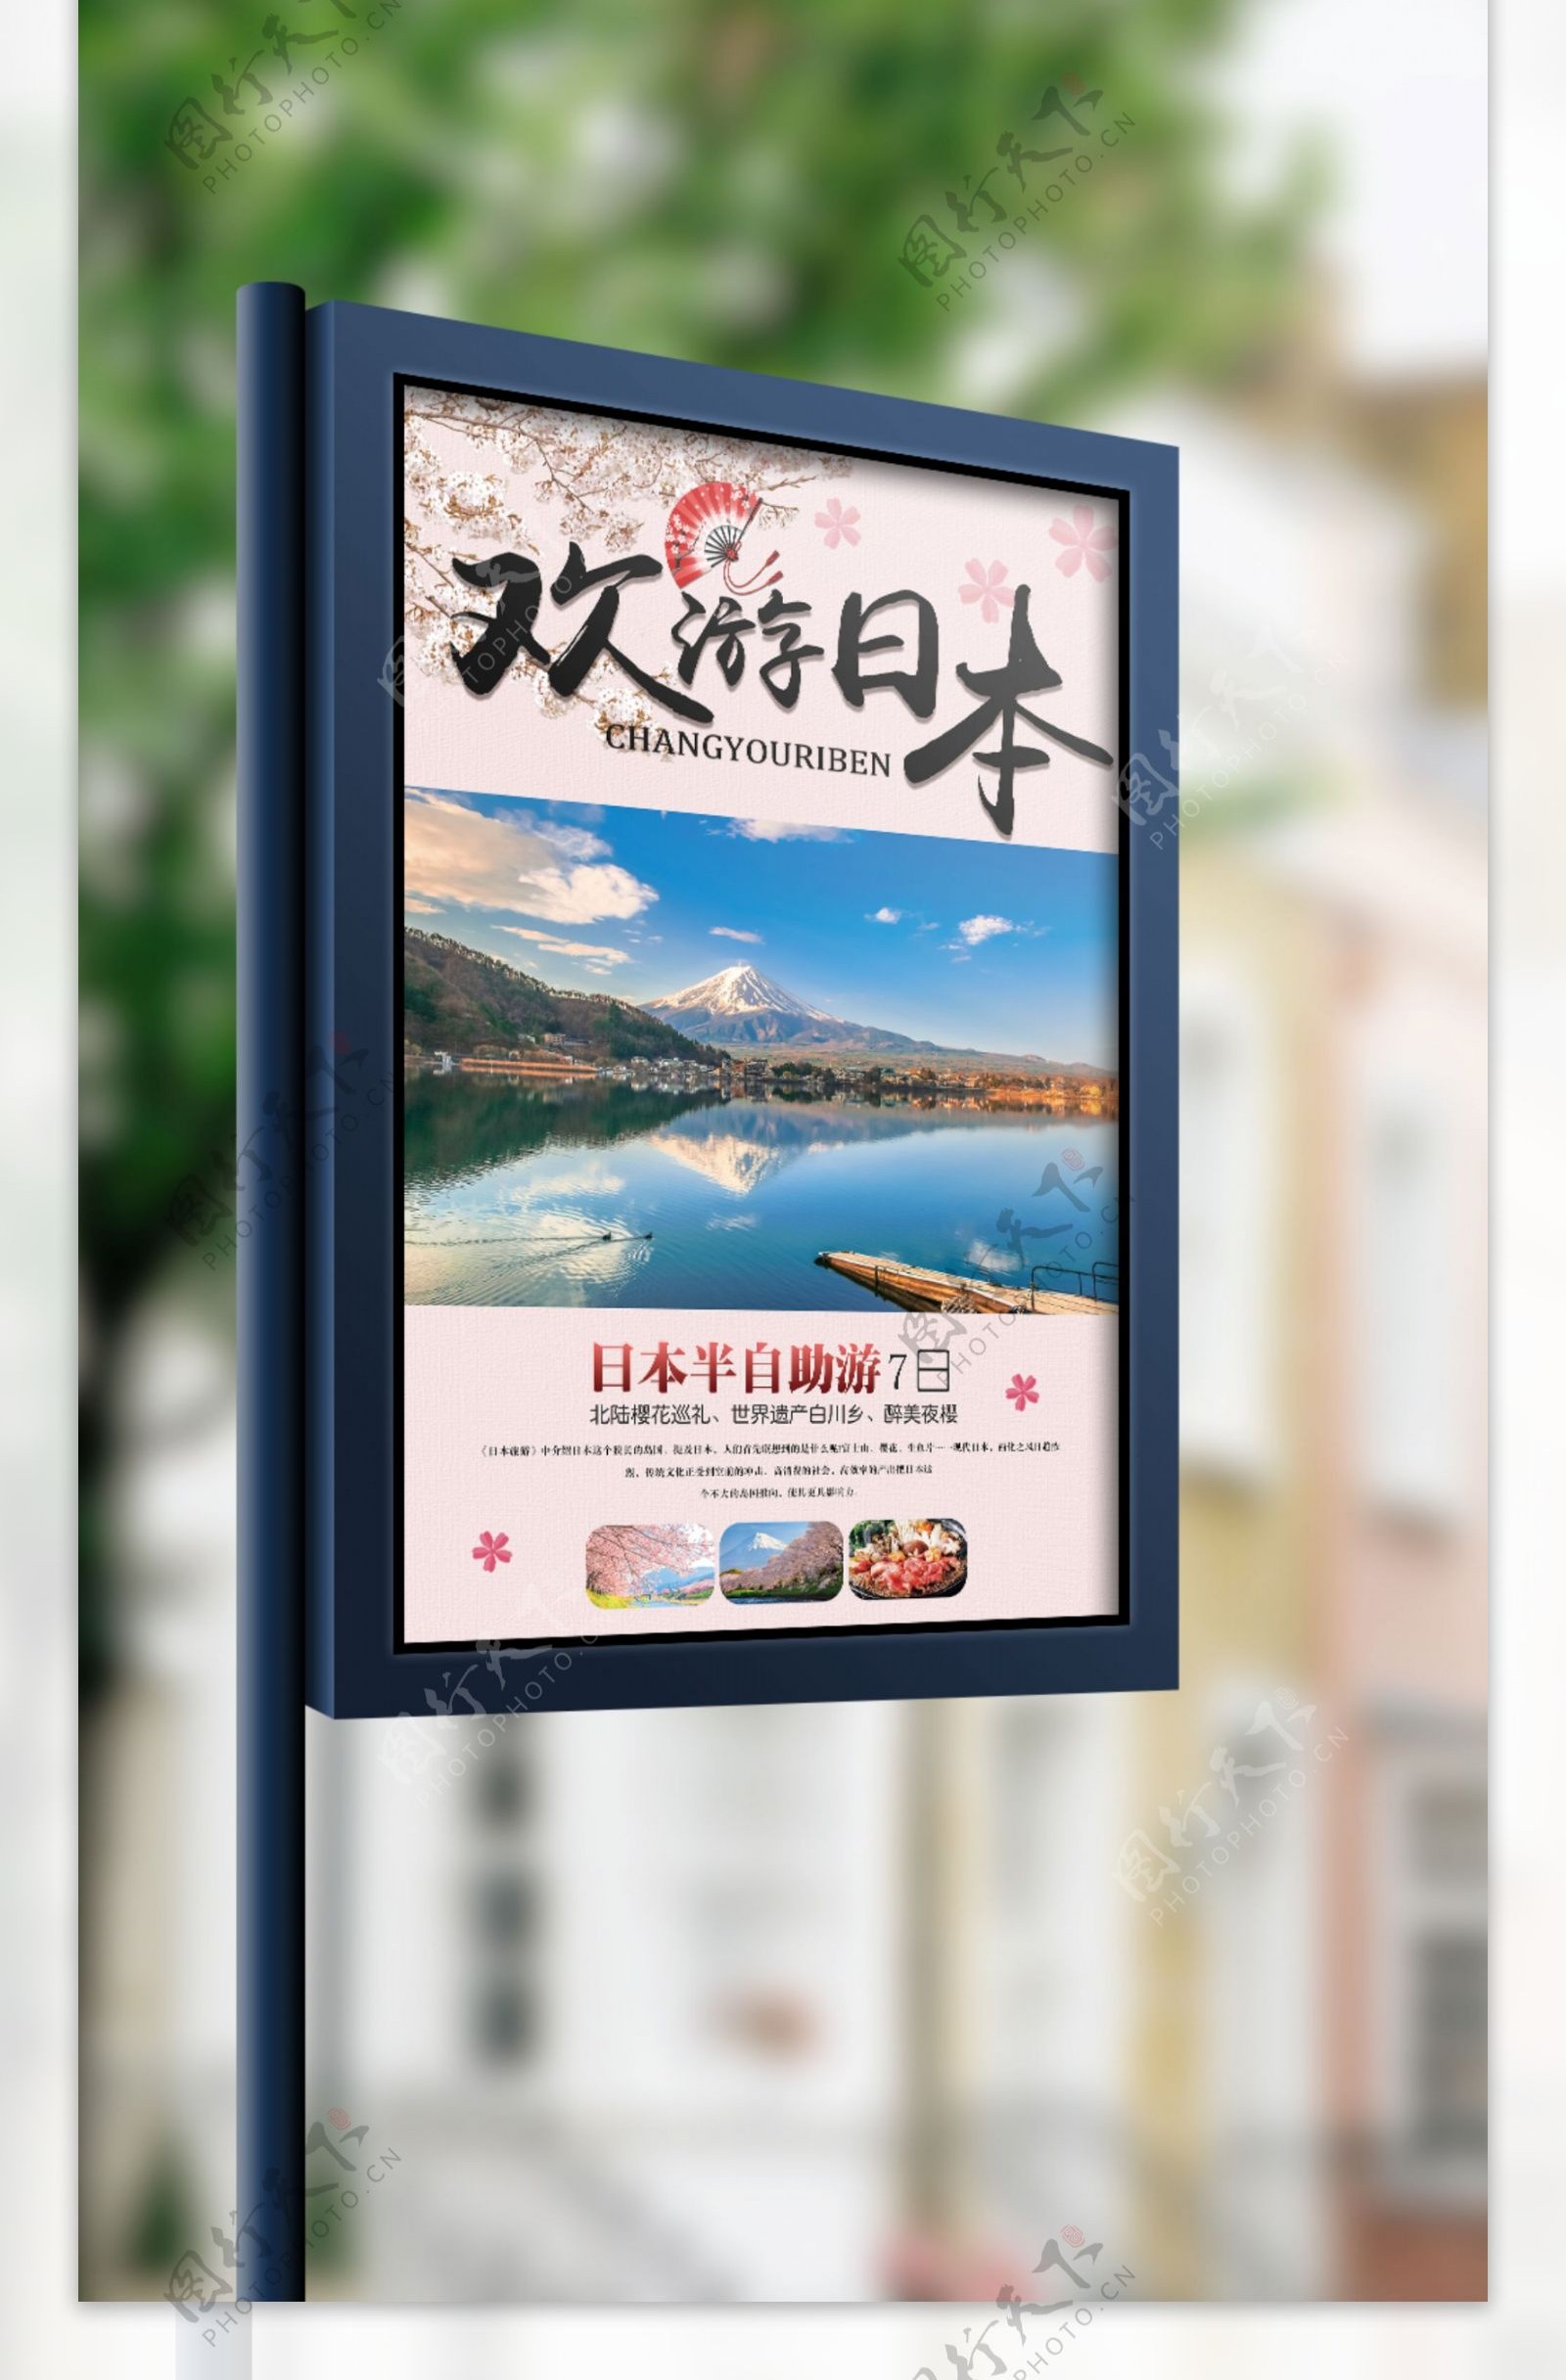 欢游日本日本旅游跟团宣传海报设计